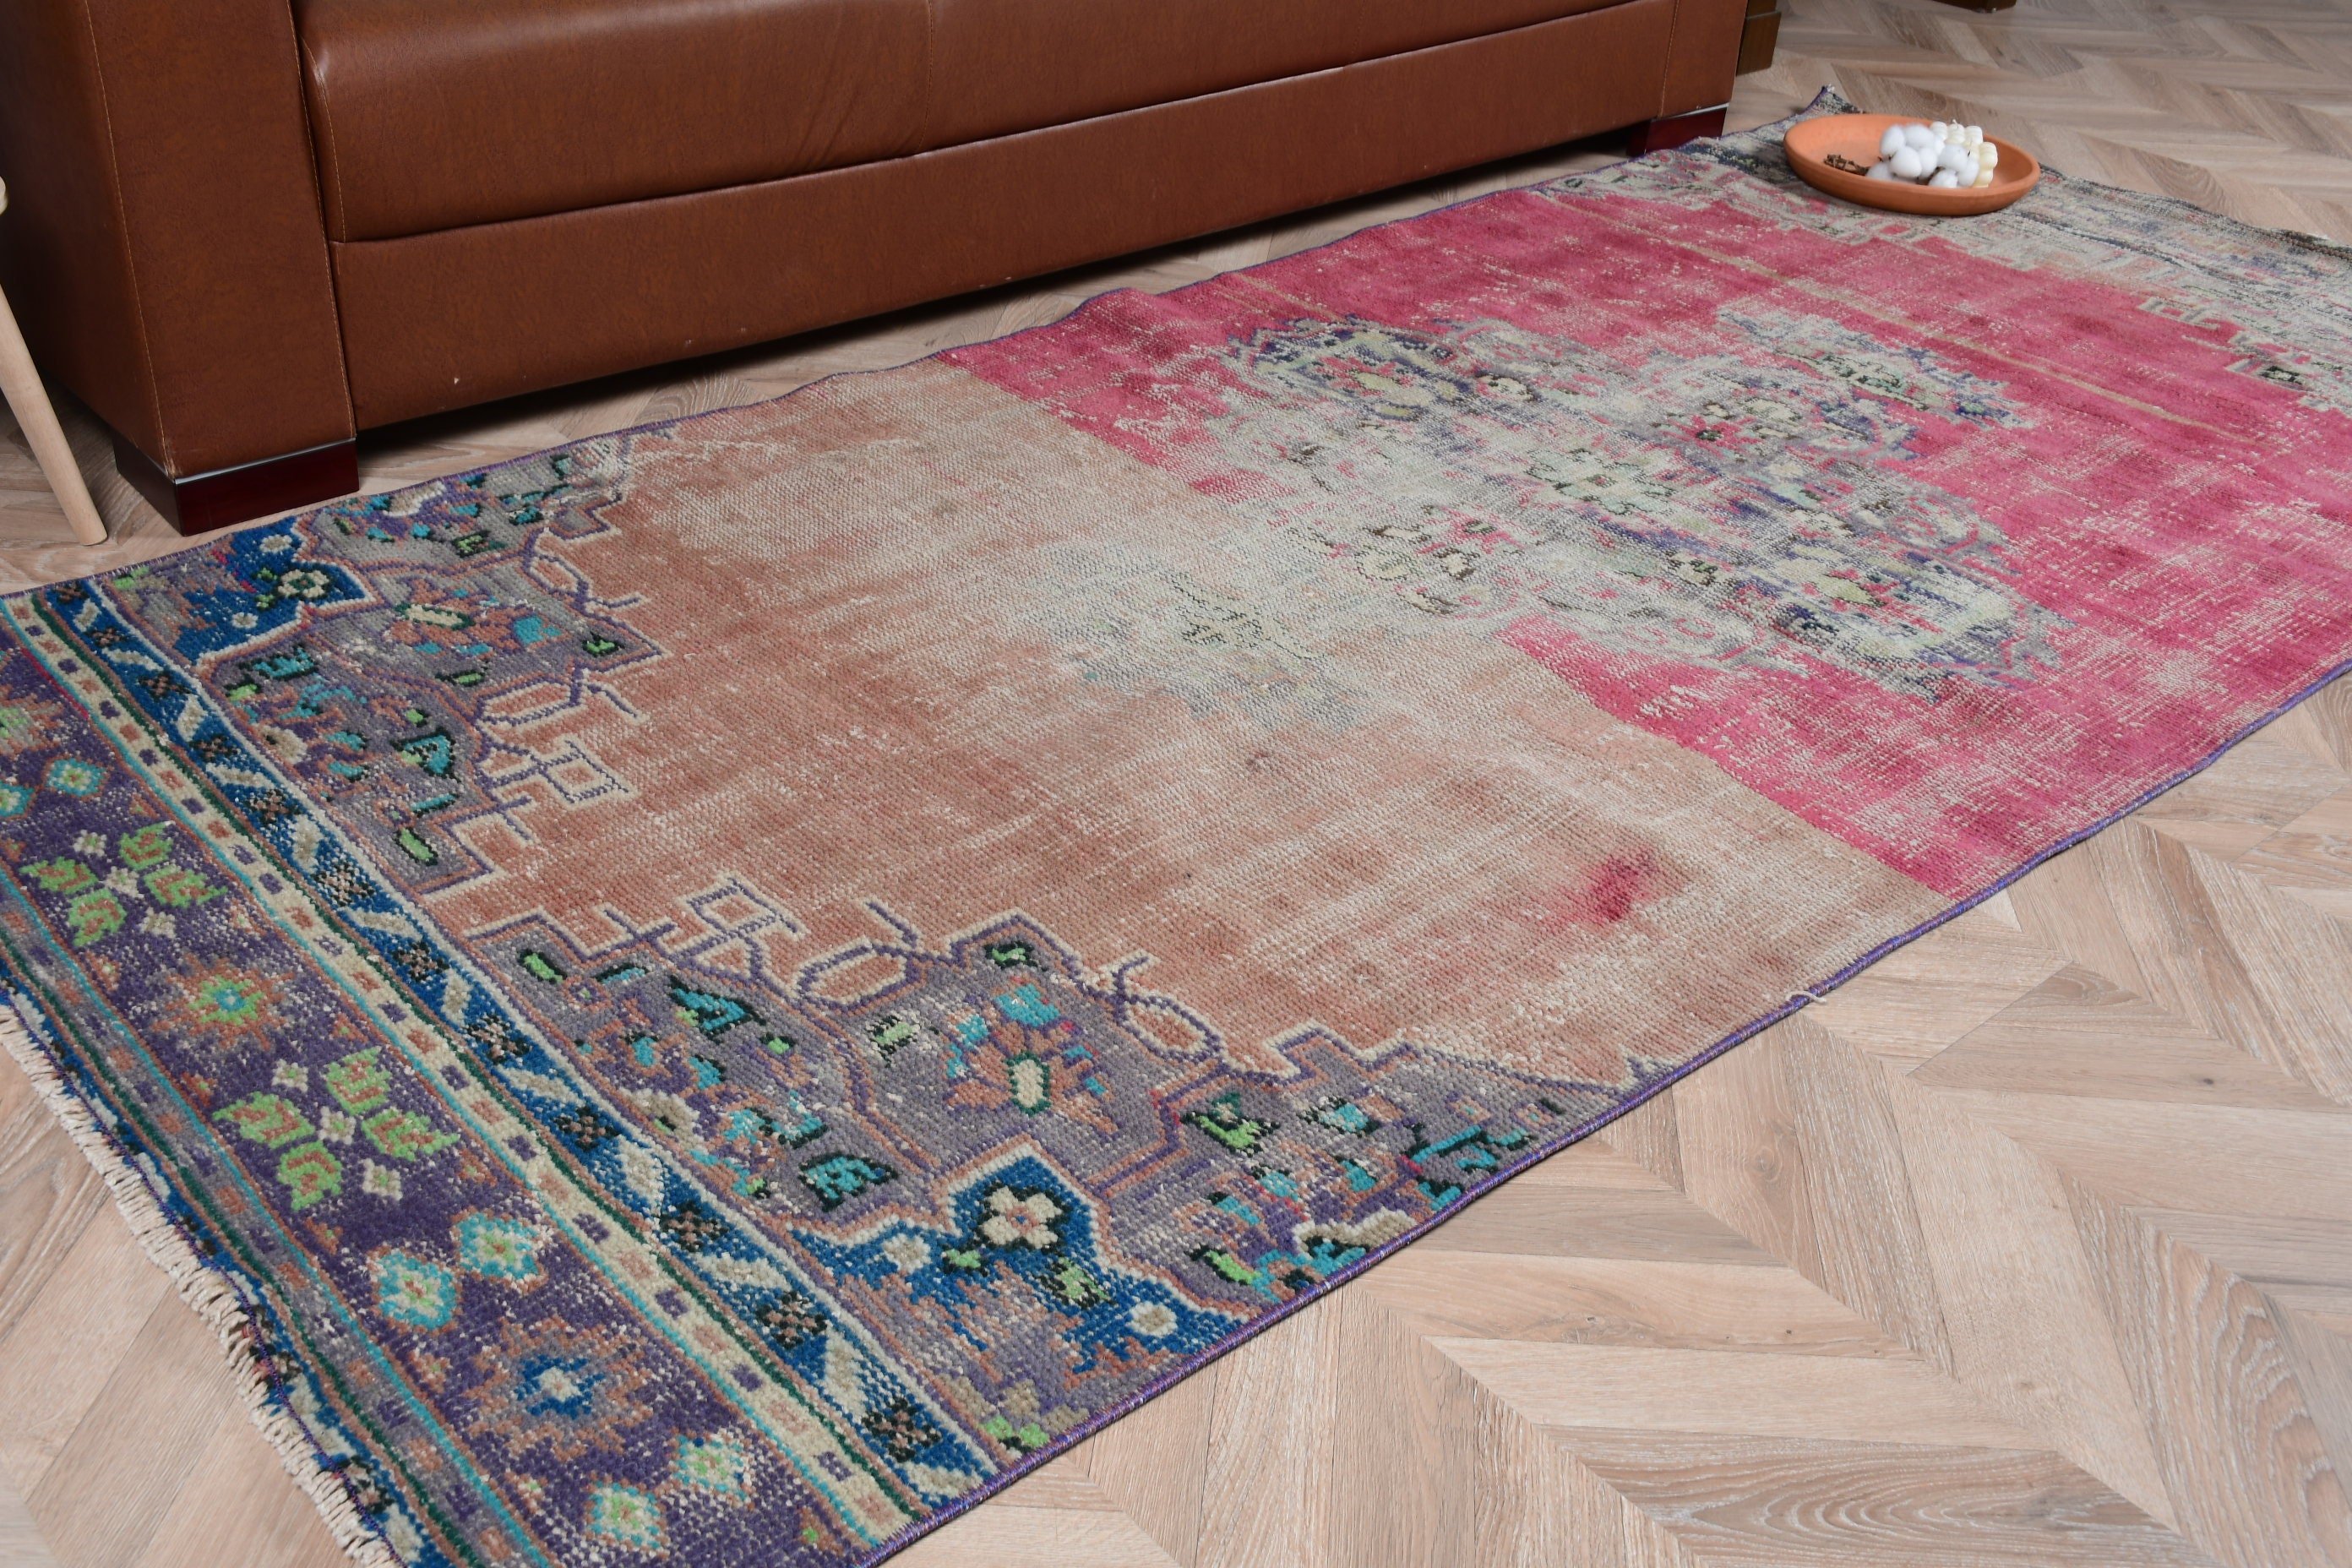 Floor Rug, Red Bedroom Rug, Turkish Rug, Oriental Rug, Rugs for Living Room, 3.7x8.5 ft Area Rug, Vintage Rugs, Aesthetic Rug, Oushak Rug